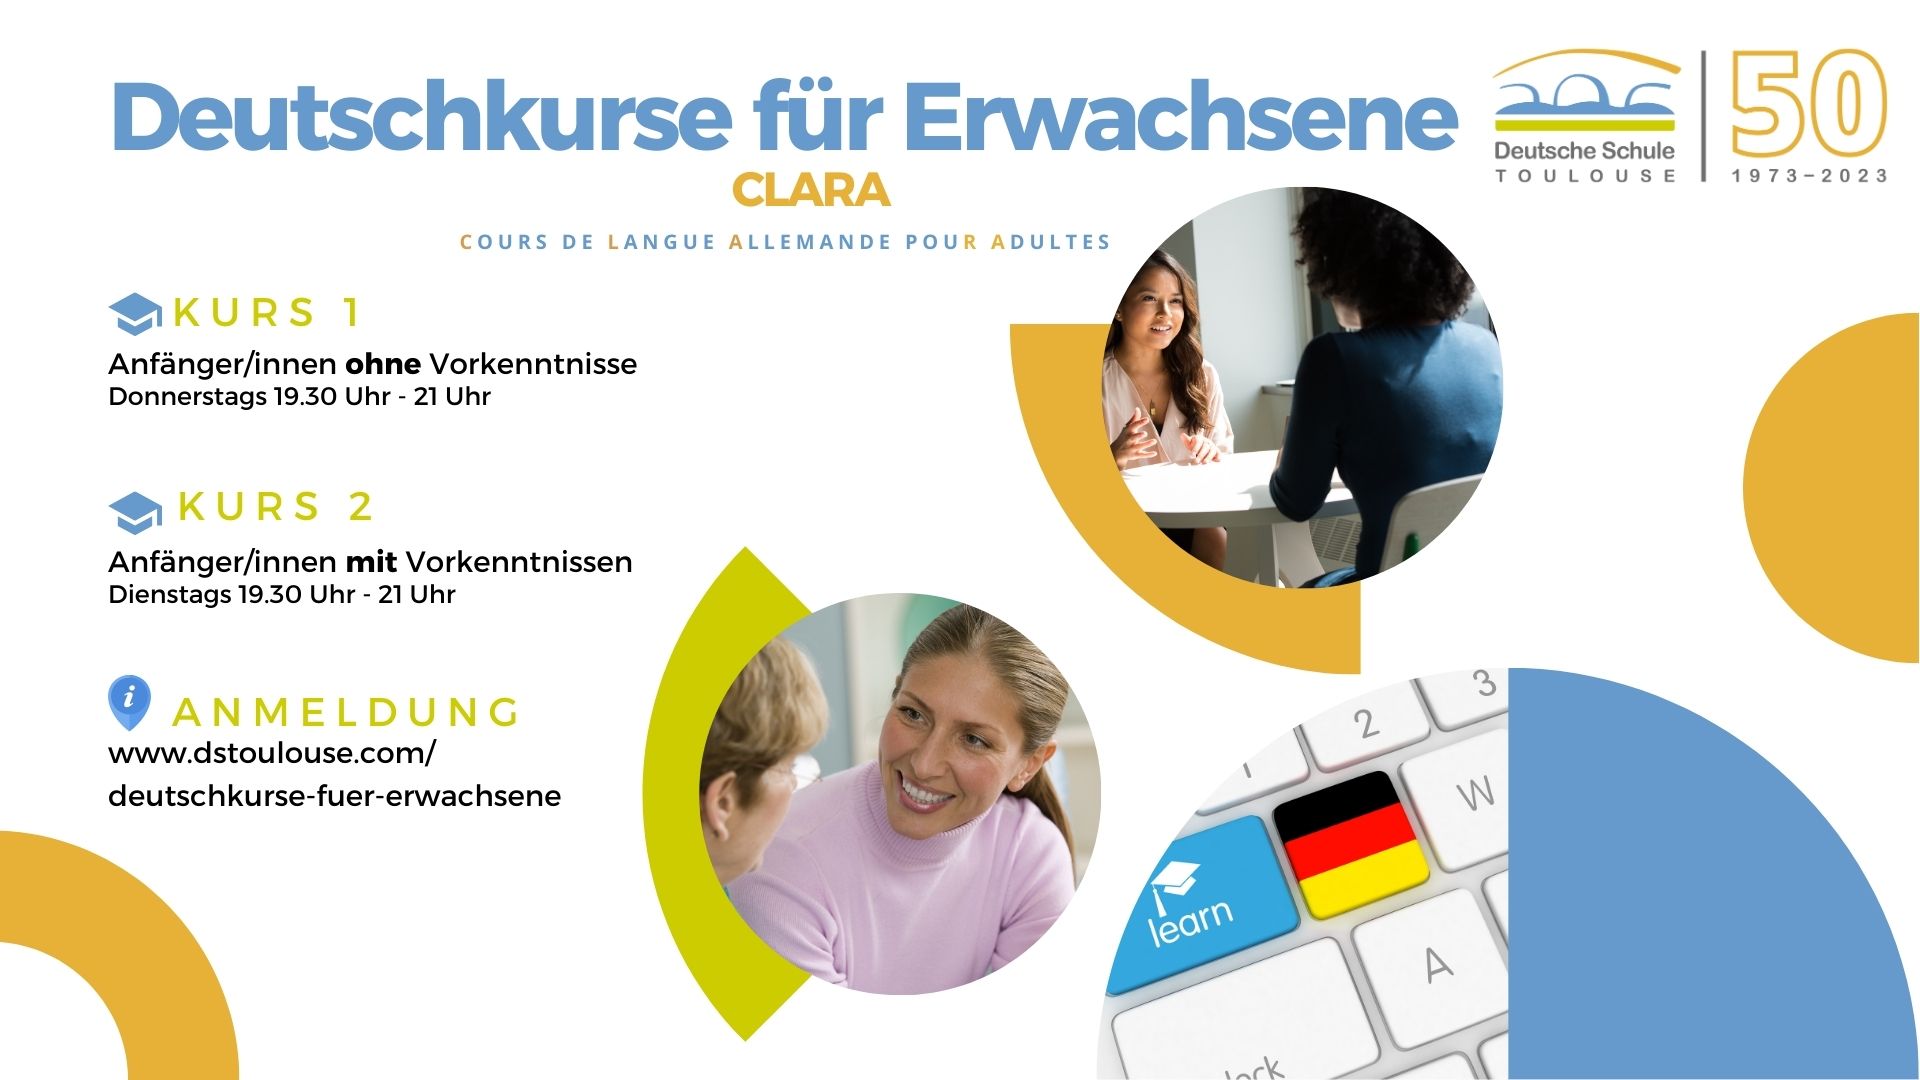 Deutsche Schule Toulouse, Deutschkurs für Erwachsene